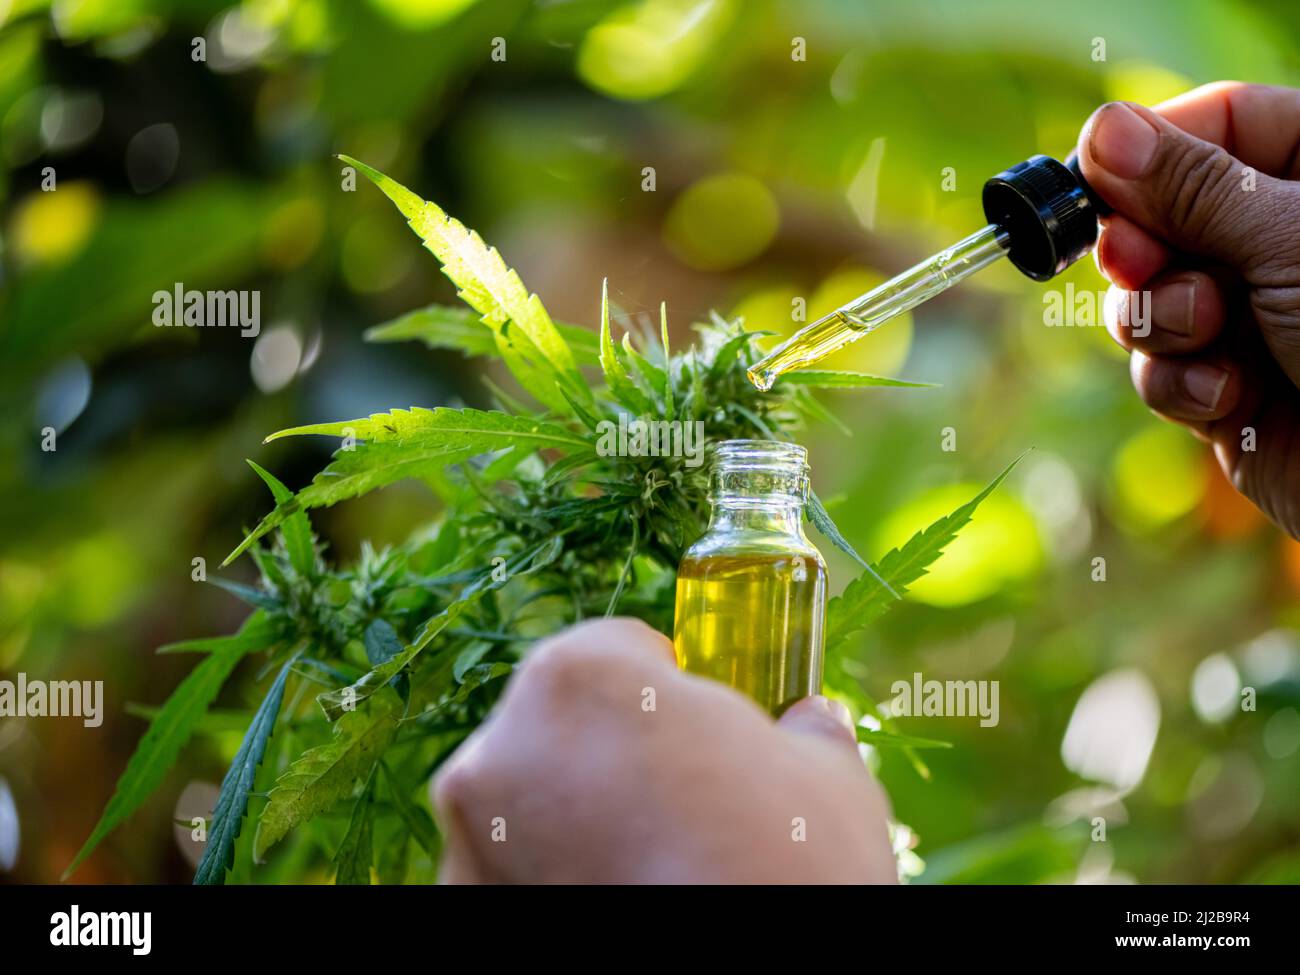 Les médecins détiennent une bouteille d'huile de chanvre, des produits de marijuana à usage médical, y compris des feuilles de chanvre, du cbd et des capsules d'huile de chanvre CBD. Banque D'Images